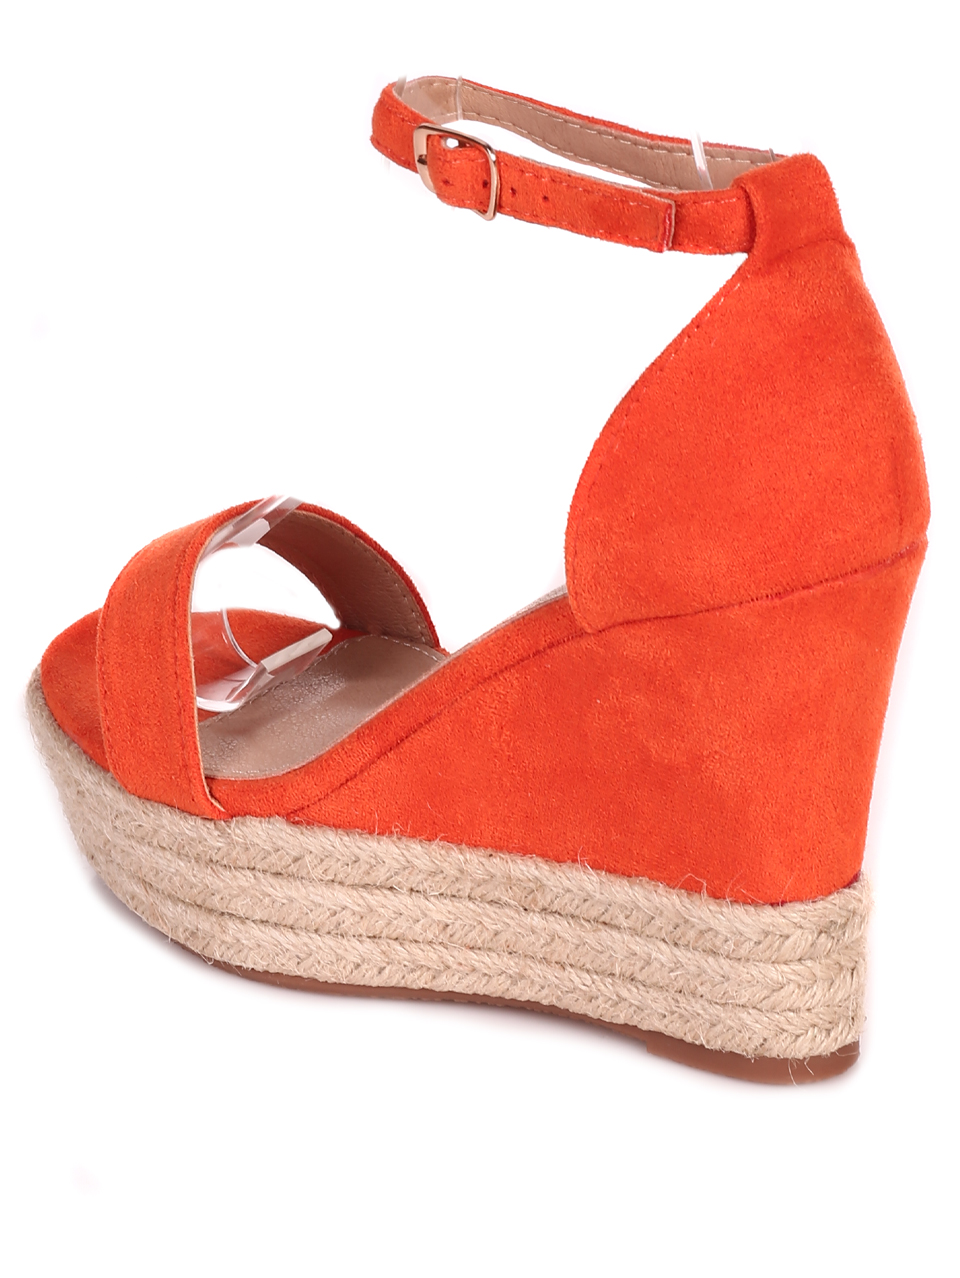 Елегантни дамски сандали на платформа в оранжево 4U-23264 orange